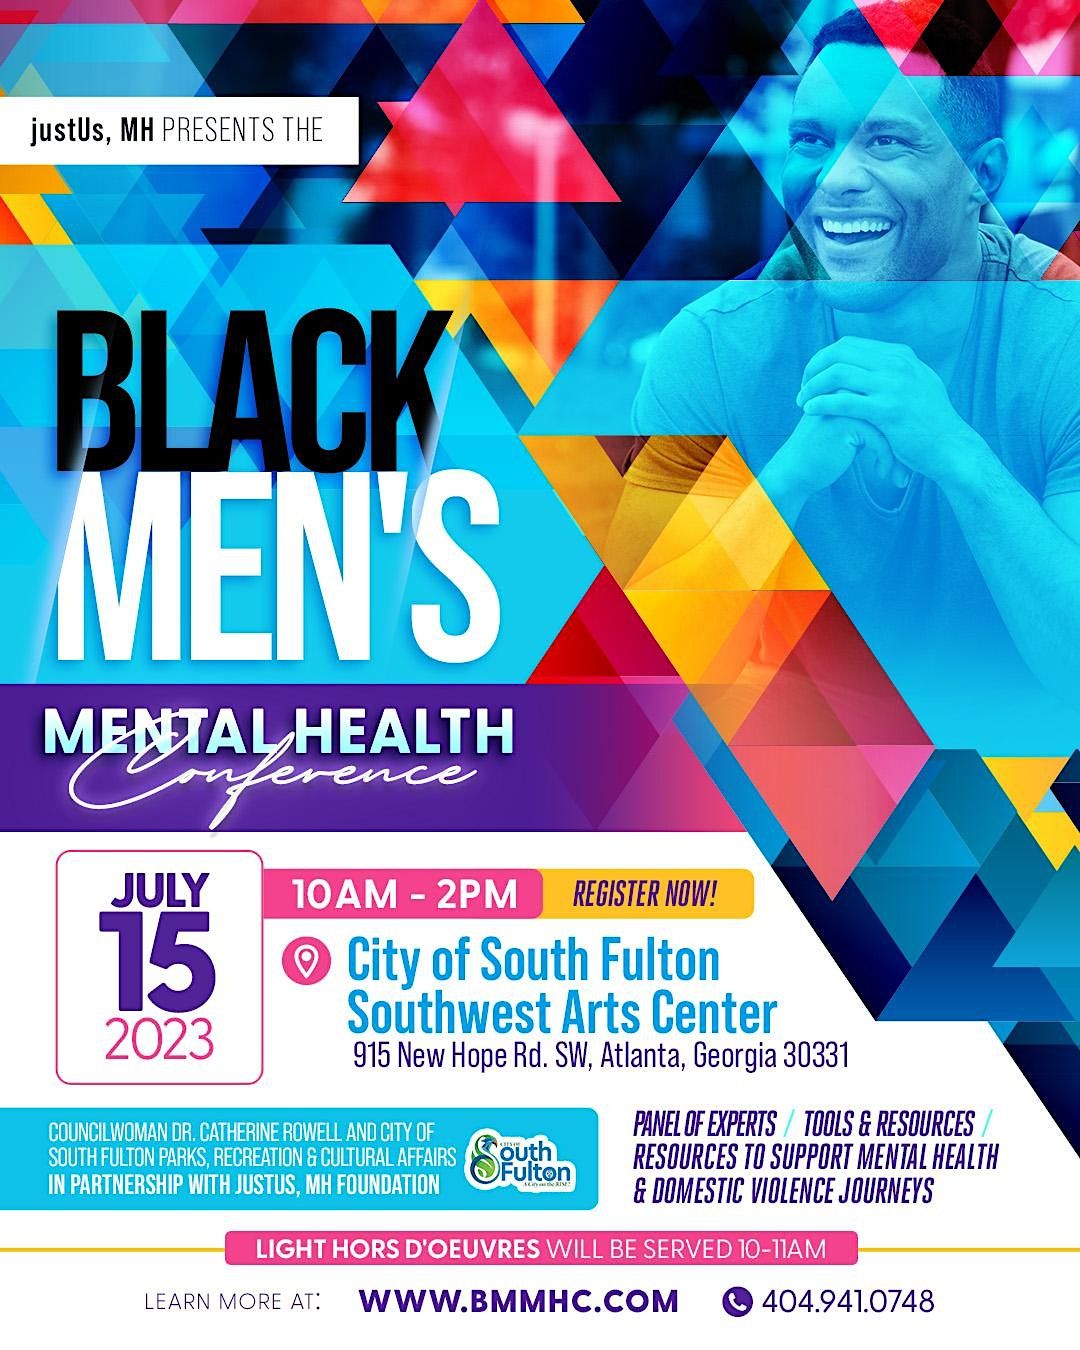 Black Men's Mental Health Conference